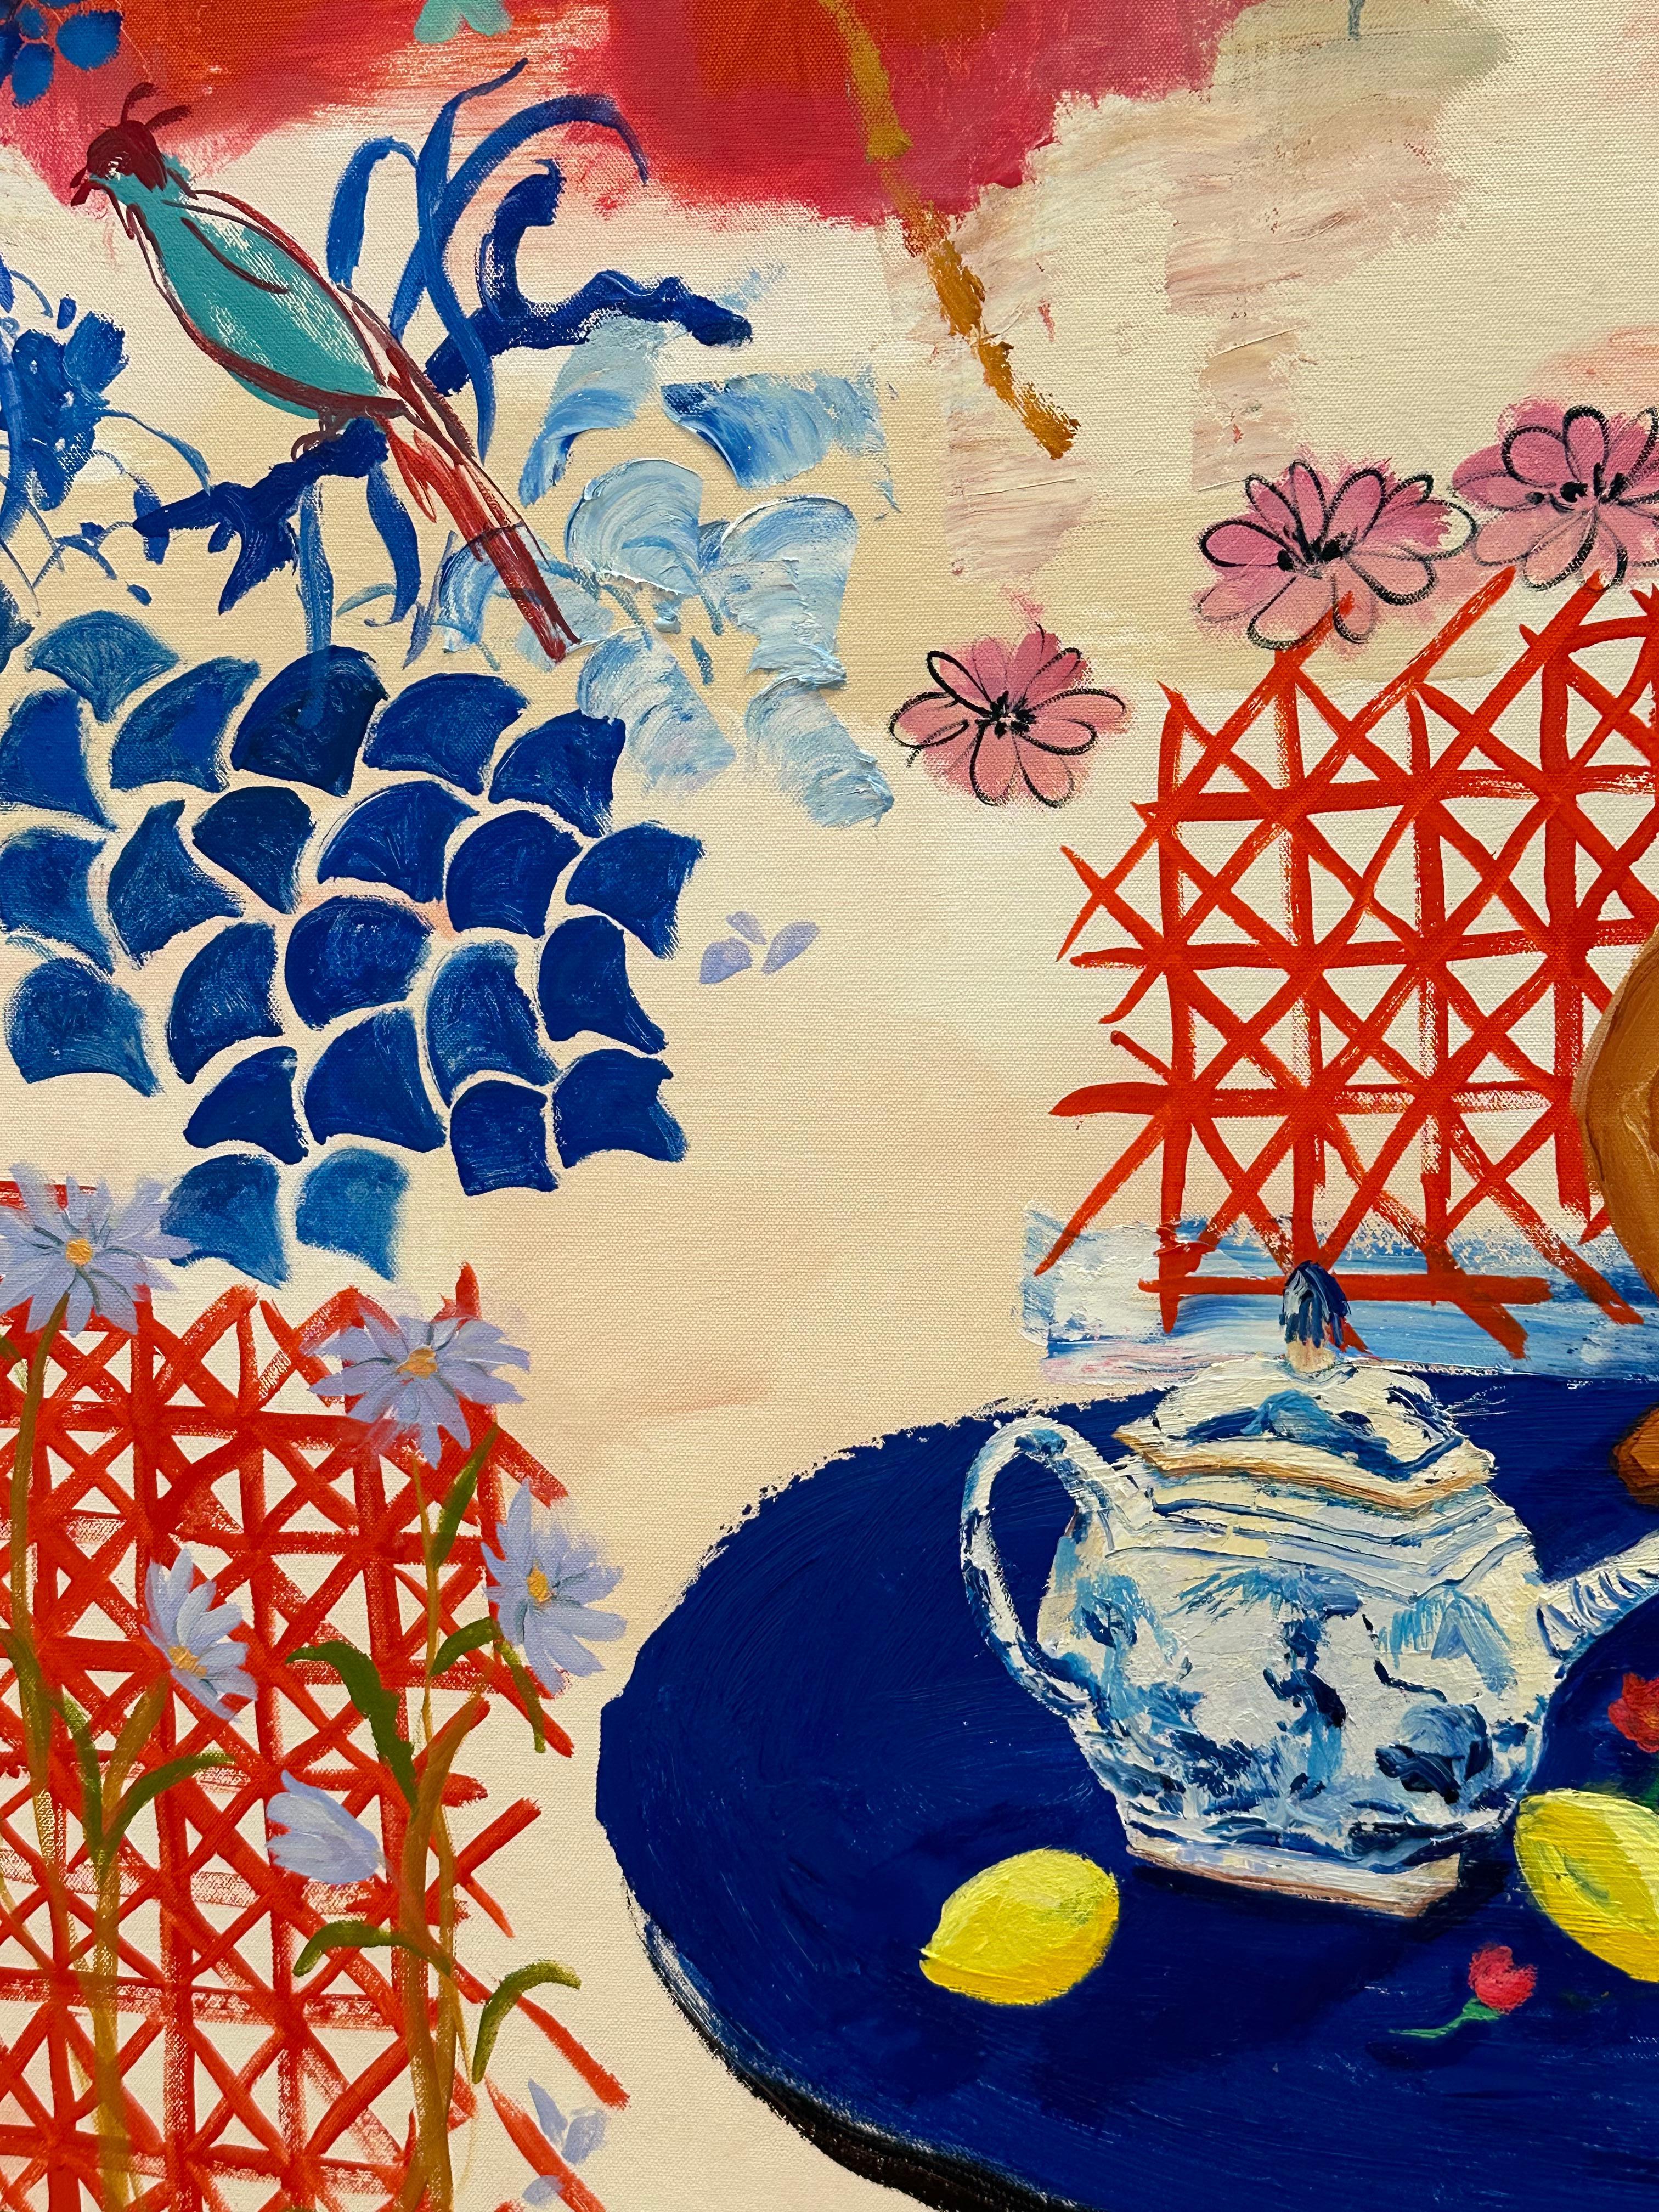 Ein lebhaftes und farbenfrohes Esszimmerinterieur mit einem Blumenarrangement in einer bemalten Vase neben einer blau-weißen China-Teekanne, einer nackten Figur und verschiedenen Früchten, gelben Zitronen, Birnen und grünen Limetten auf einem blauen